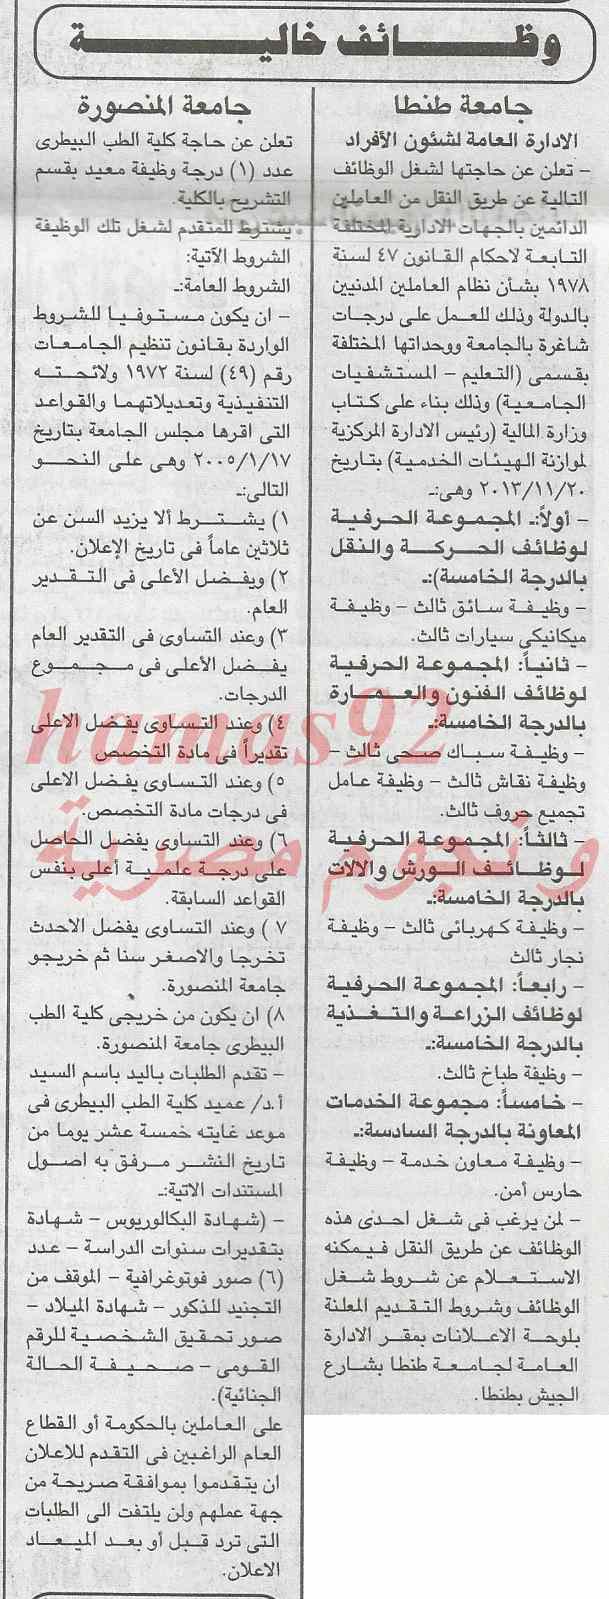 وظائف جريدة الجمهورية اليوم الاربعاء 5-2-2014 , وظائف خالية اليوم 5 فبراير 2014